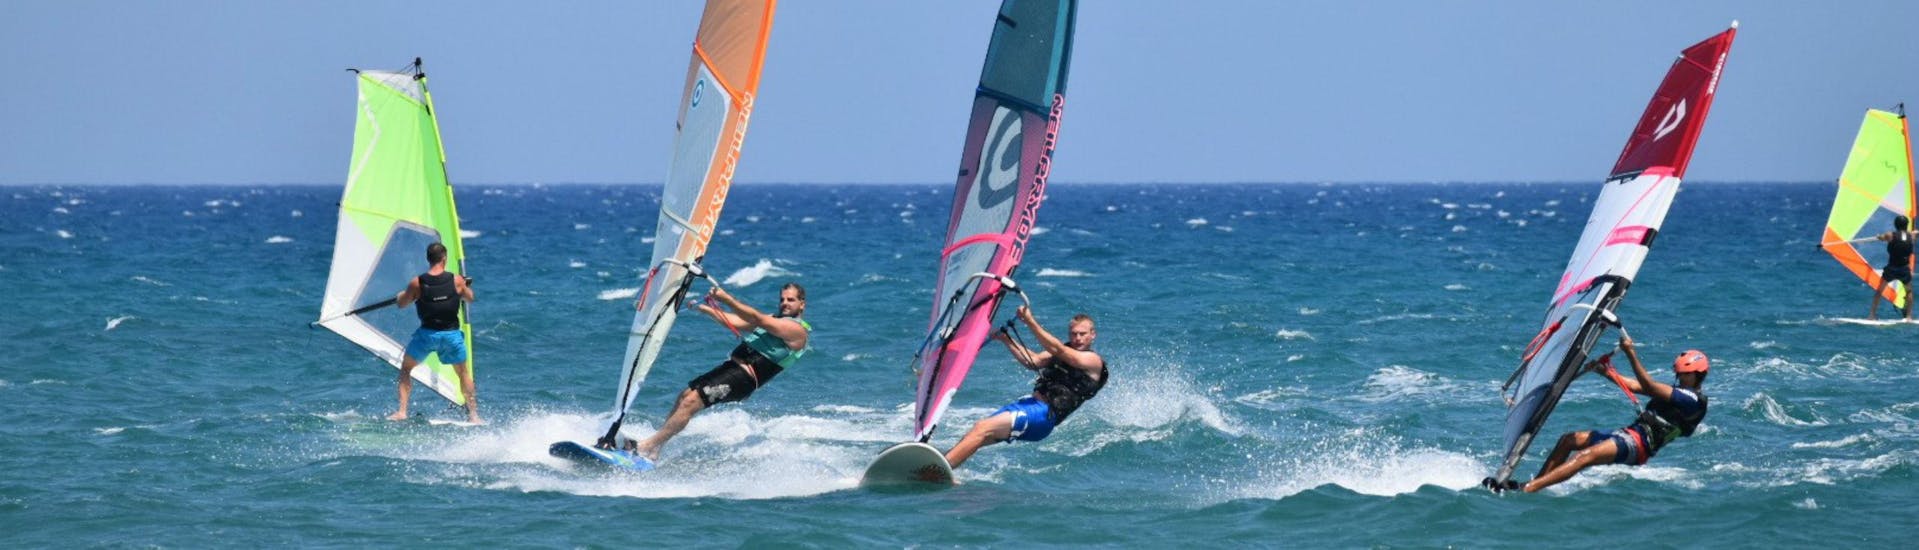 Cours privé de windsurf à Larnaca (dès 7 ans).